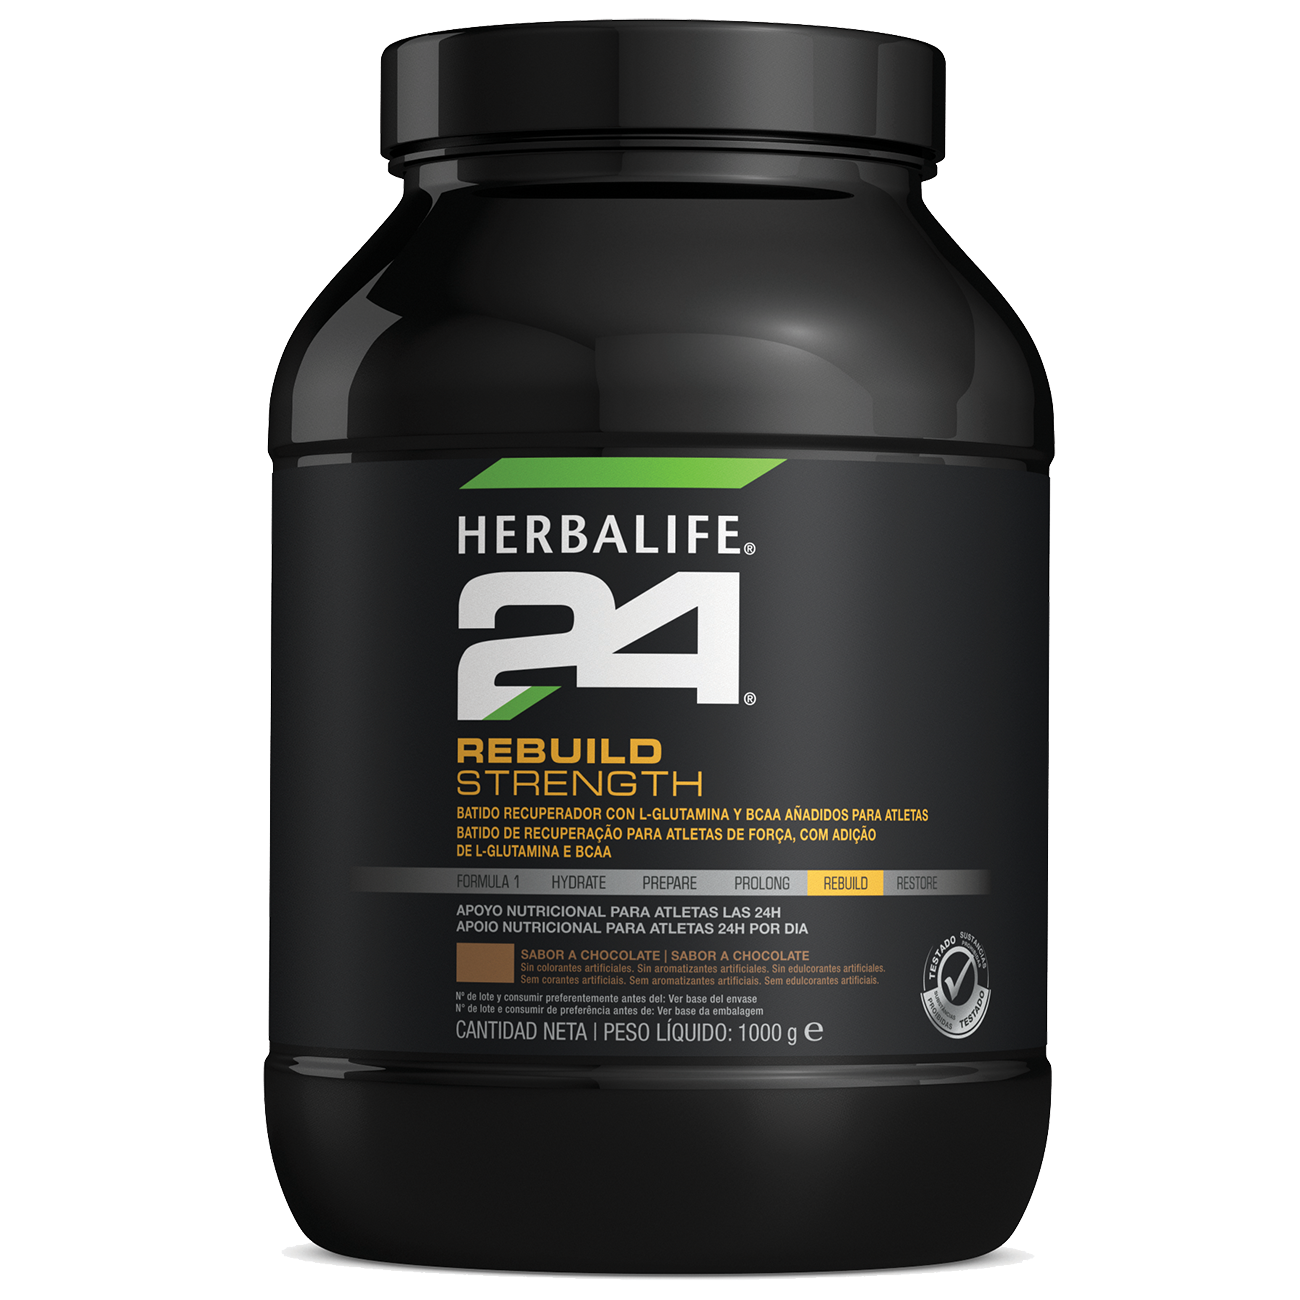 Herbalife 24 Rebuild Strenght Nutrição Desportiva Chocolate product shot